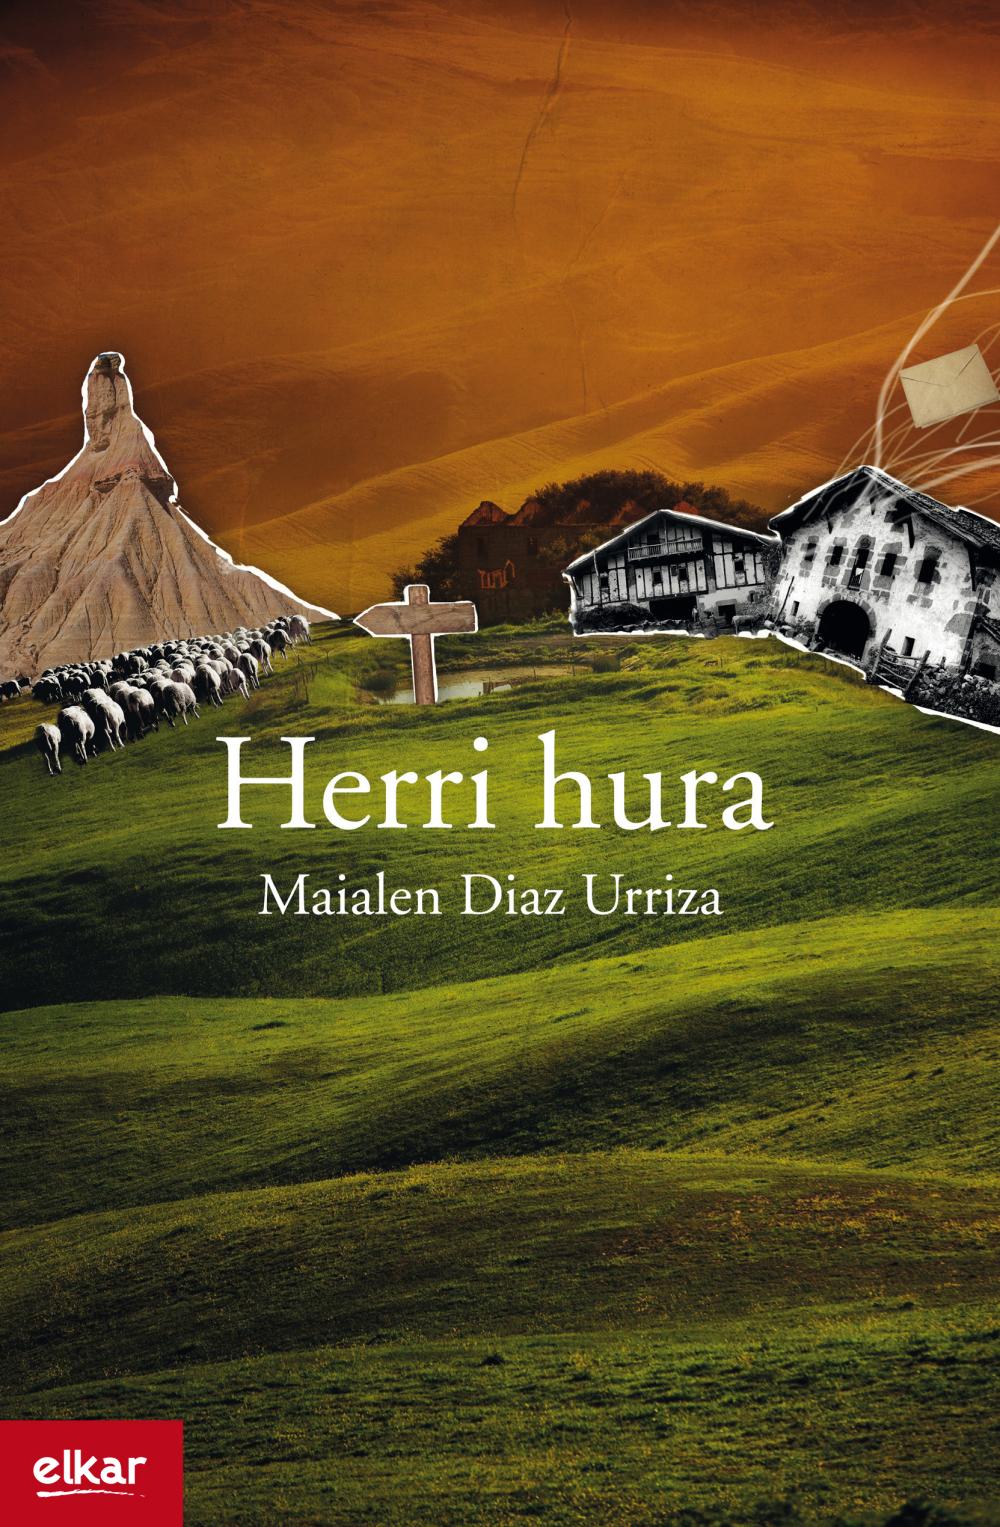 HERRI HURA